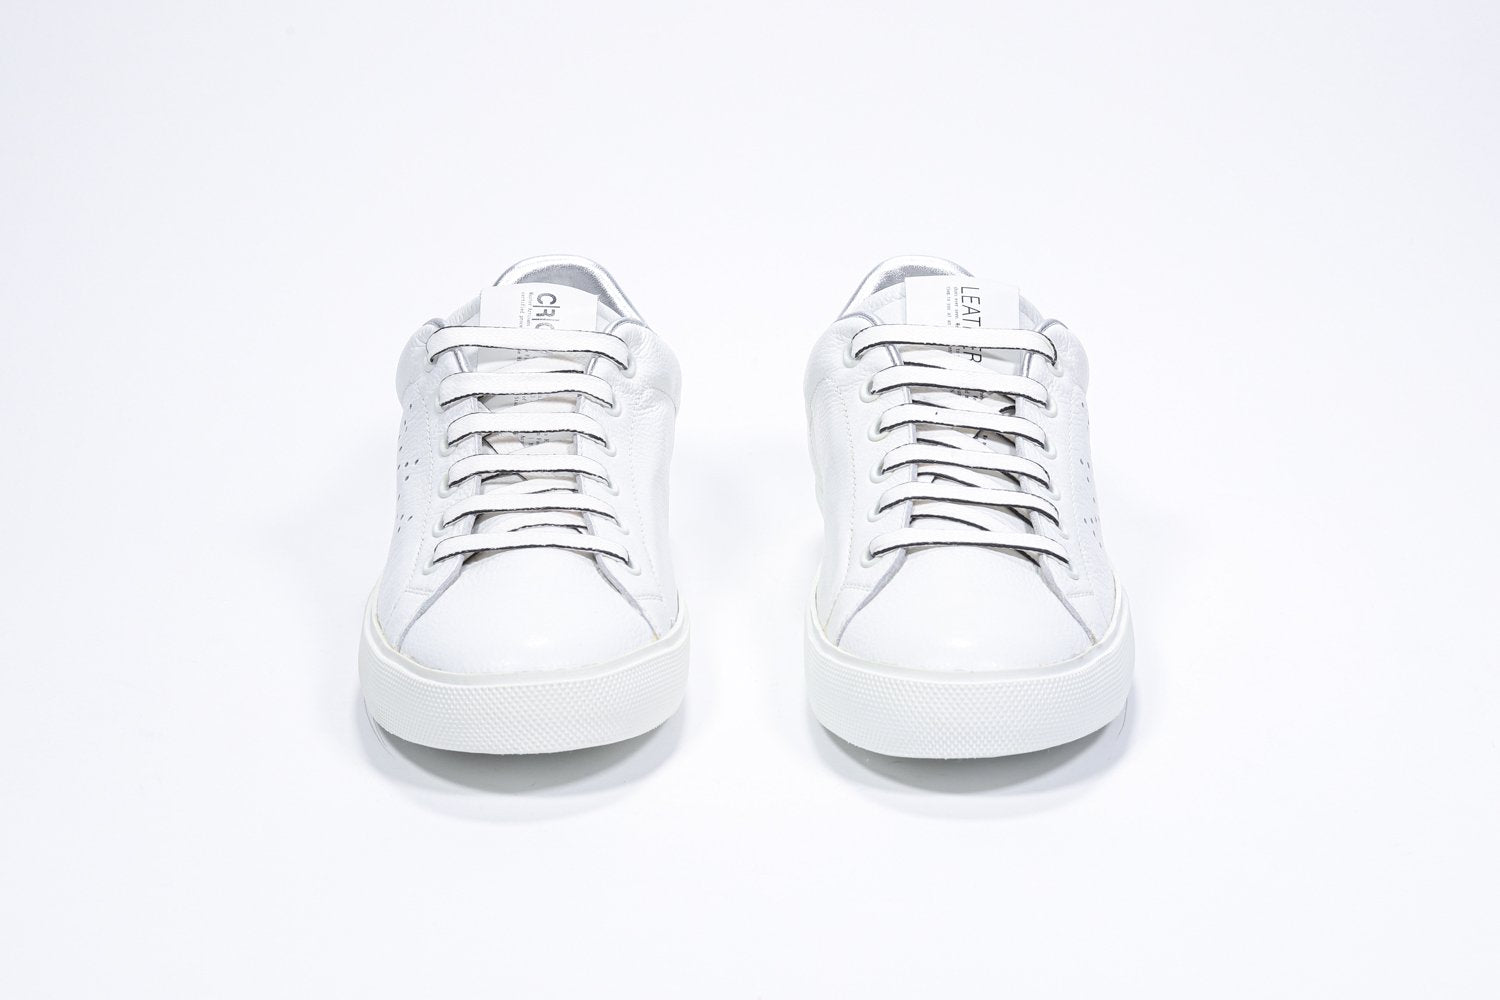 Vorderansicht des weißen Low Top sneaker mit silbernen Details und perforiertem Kronenlogo auf dem Obermaterial. Obermaterial aus Vollleder und weiße Gummisohle.